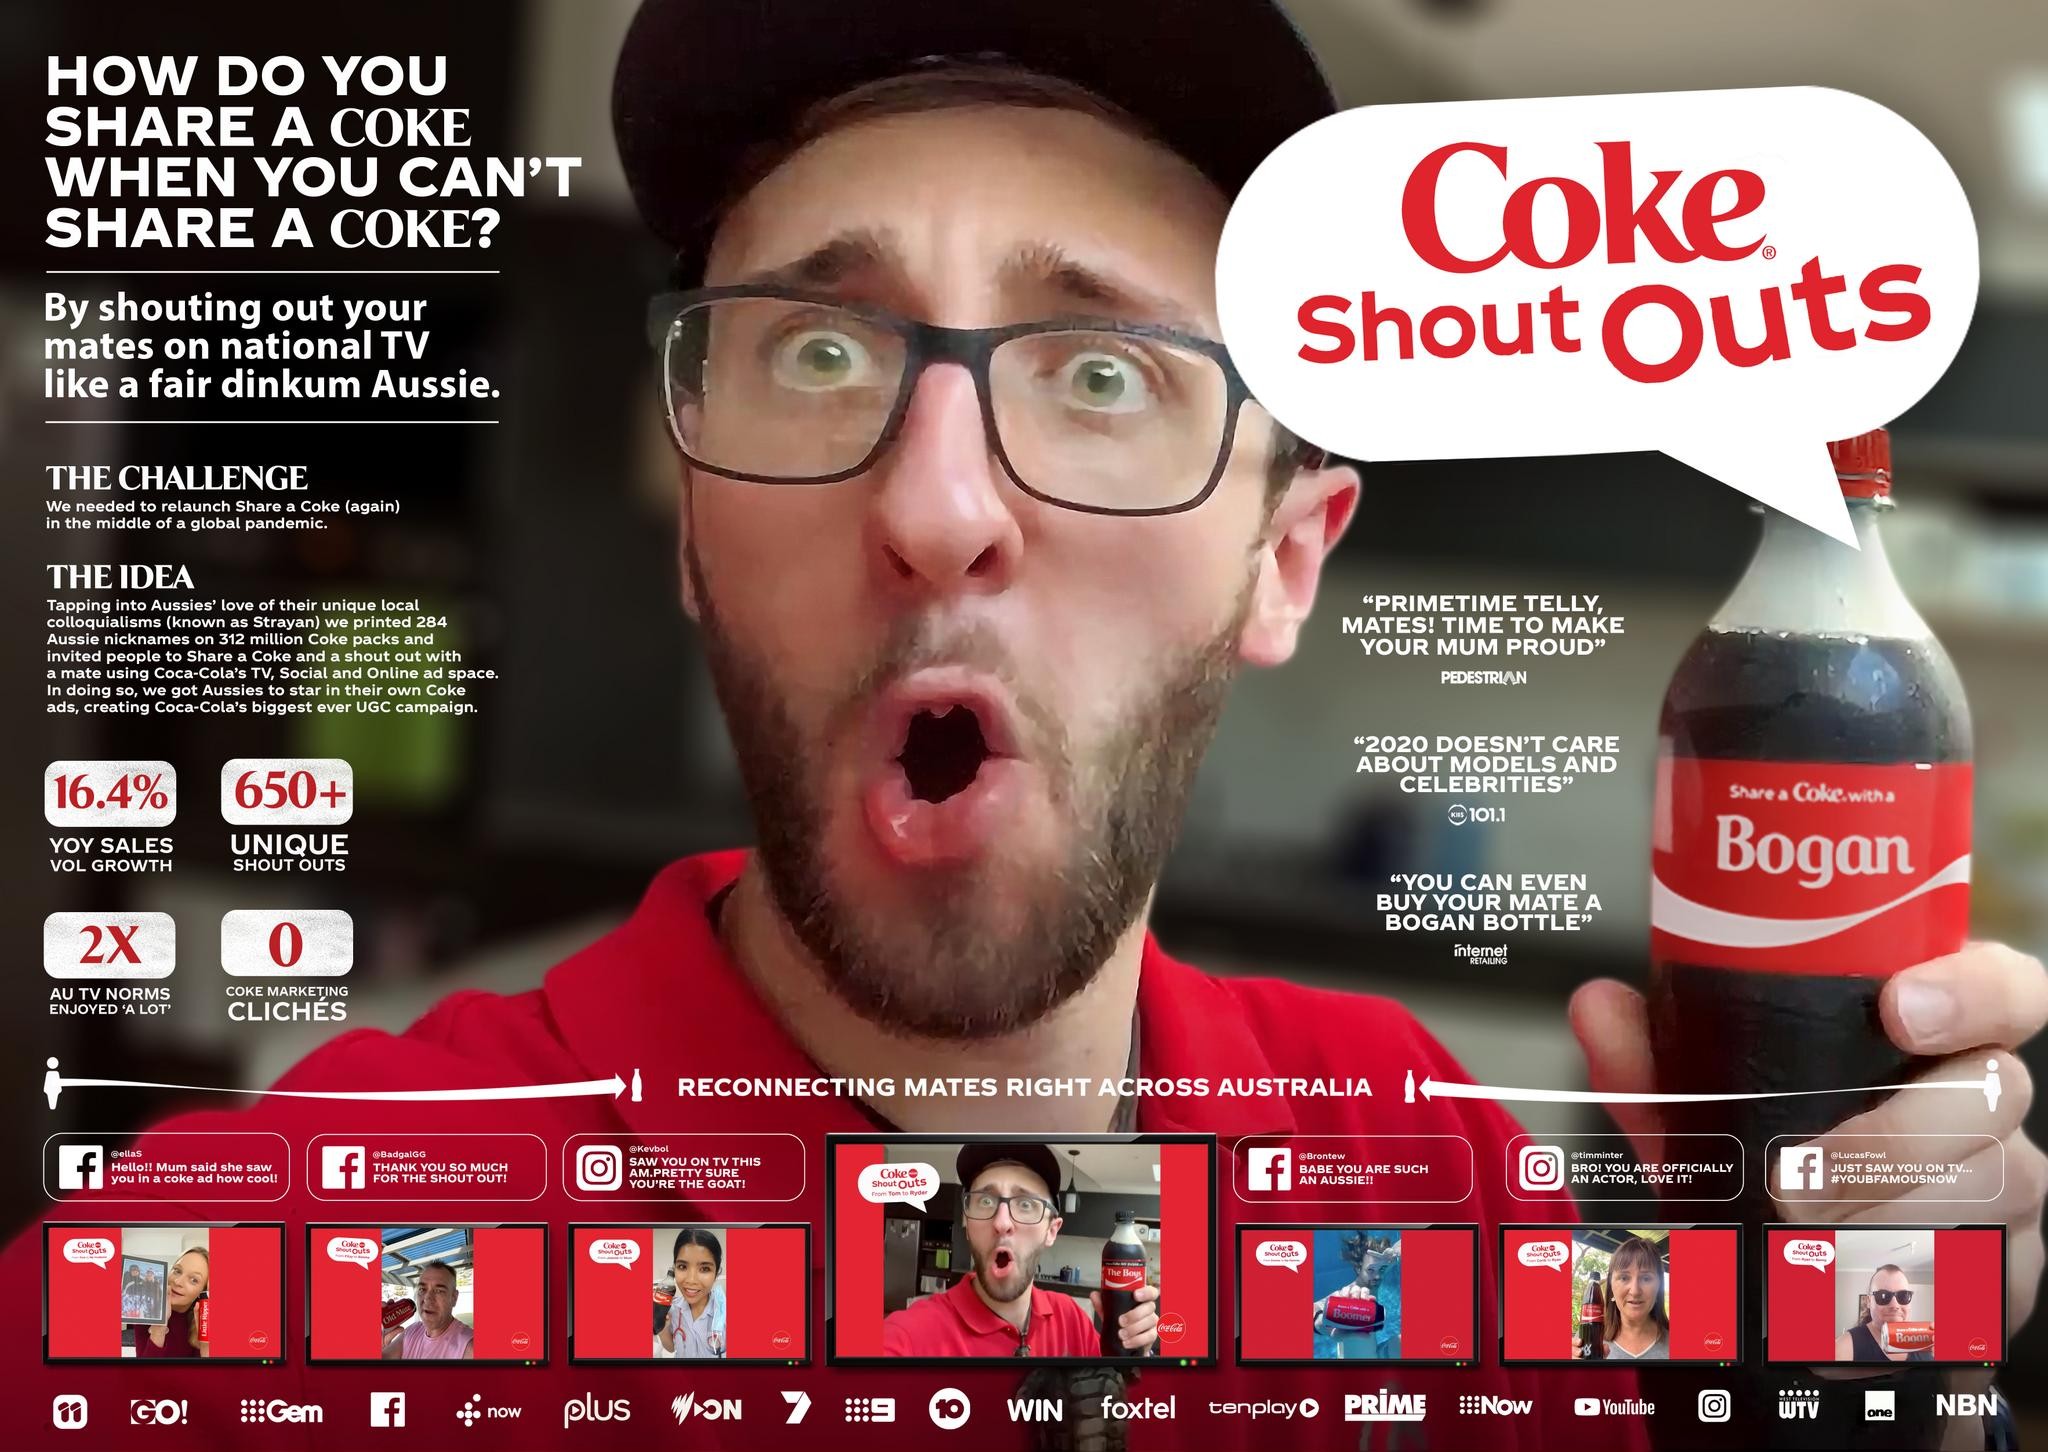 Coke Shout Outs